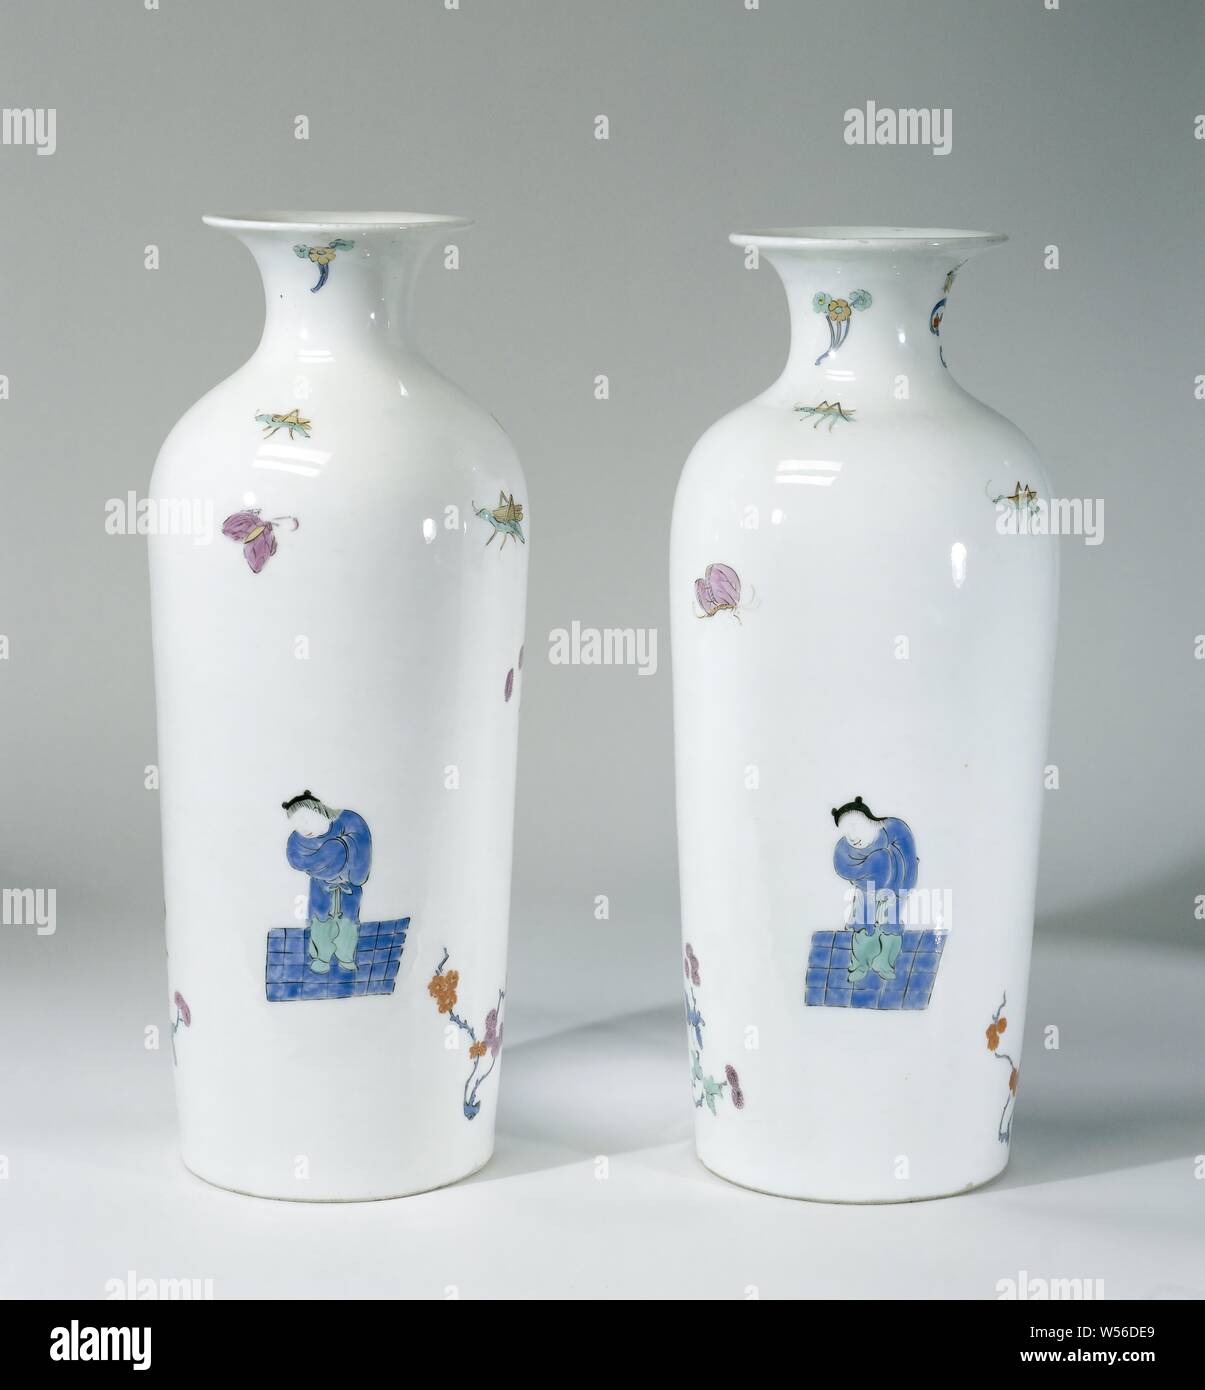 Vase, peint multicolore avec un décor Kakiemon, vase cylindrique en porcelaine peinte. Le vase est décoré avec un garçon en vert et bleu debout sur un sol bleu à carreaux, un bouquet de fleurs en bleu et violet attachées ensemble avec un ruban bleu et vert Kylin. Le fond est non. Le vase n'est pas marquée., Meissener Porzellan Manufaktur, Meissen, ch. 1725 - c. 1730, porcelaine (matériau), h 29,2 cm × 17,0 cm d Banque D'Images